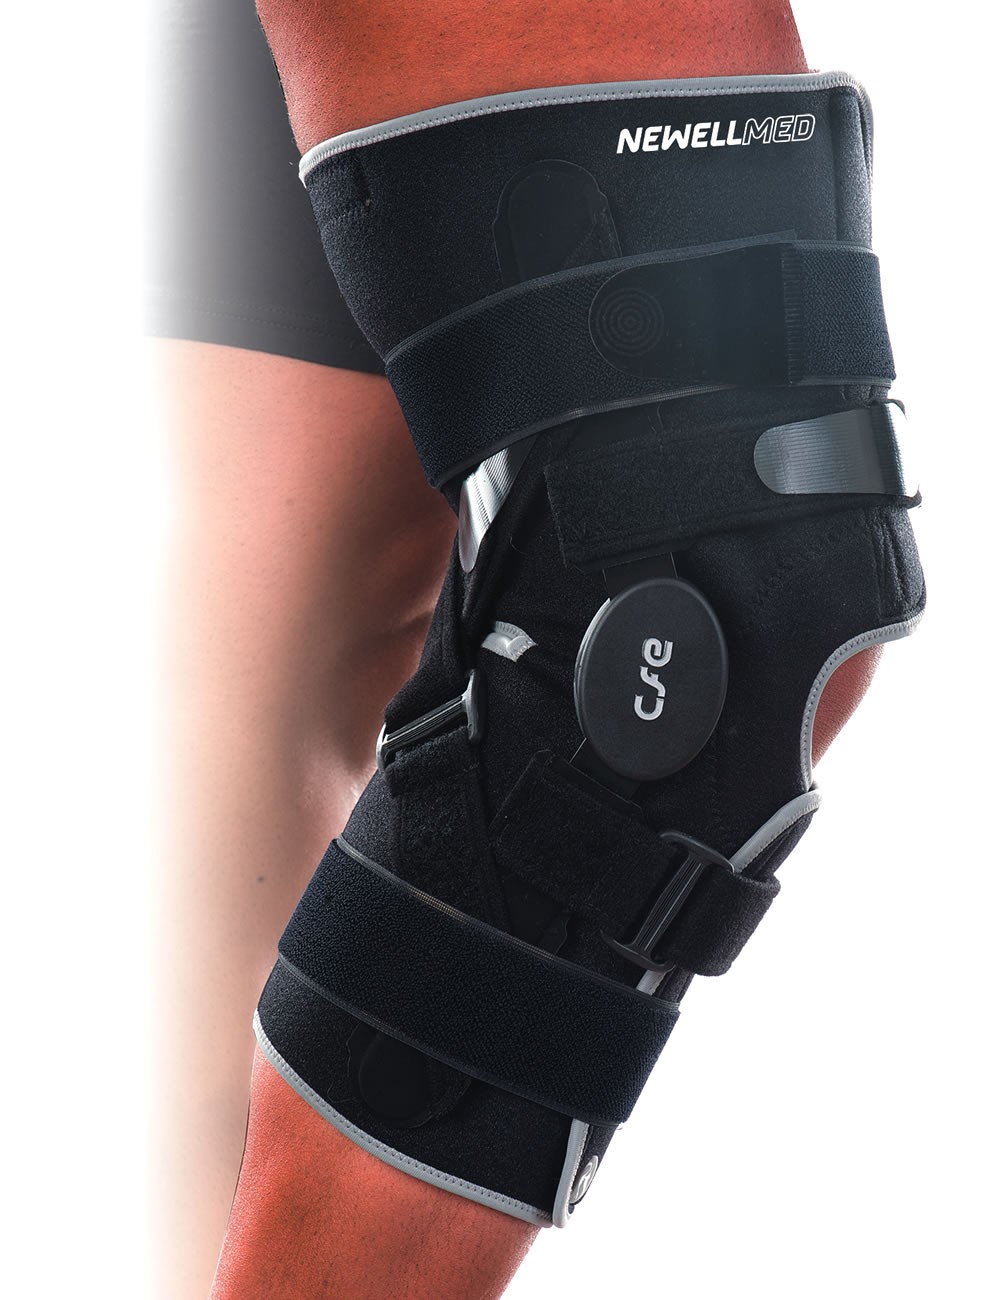 PK48 - Open knee brace